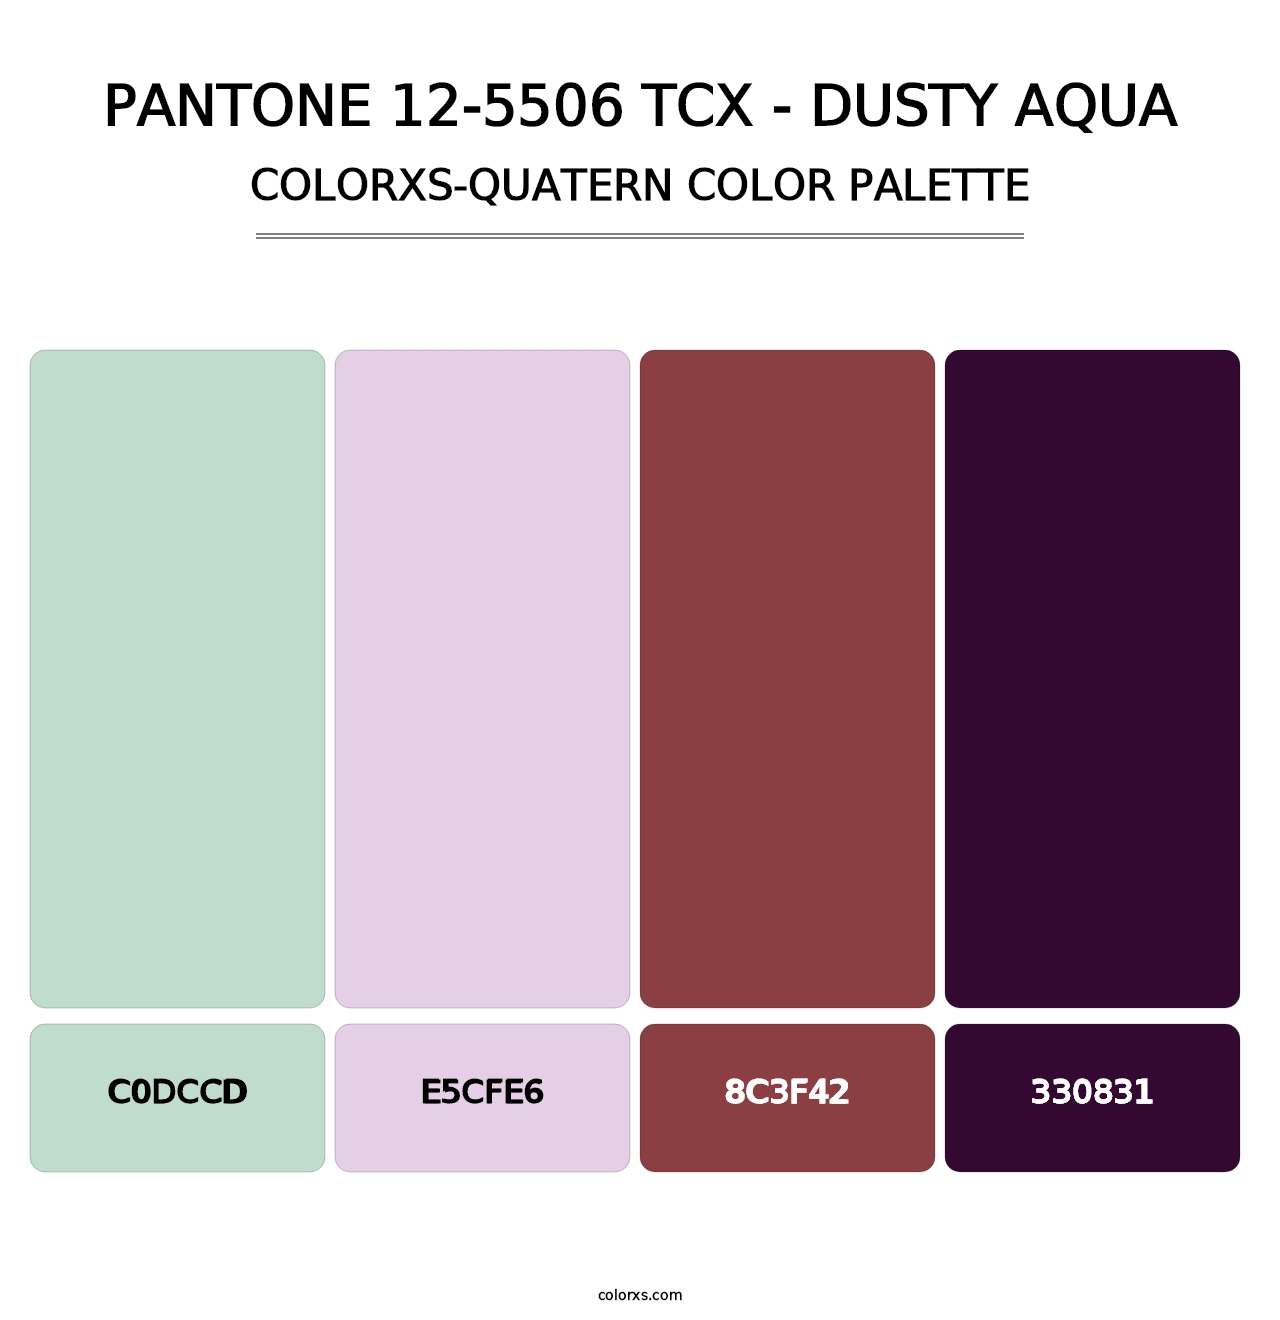 PANTONE 12-5506 TCX - Dusty Aqua - Colorxs Quatern Palette